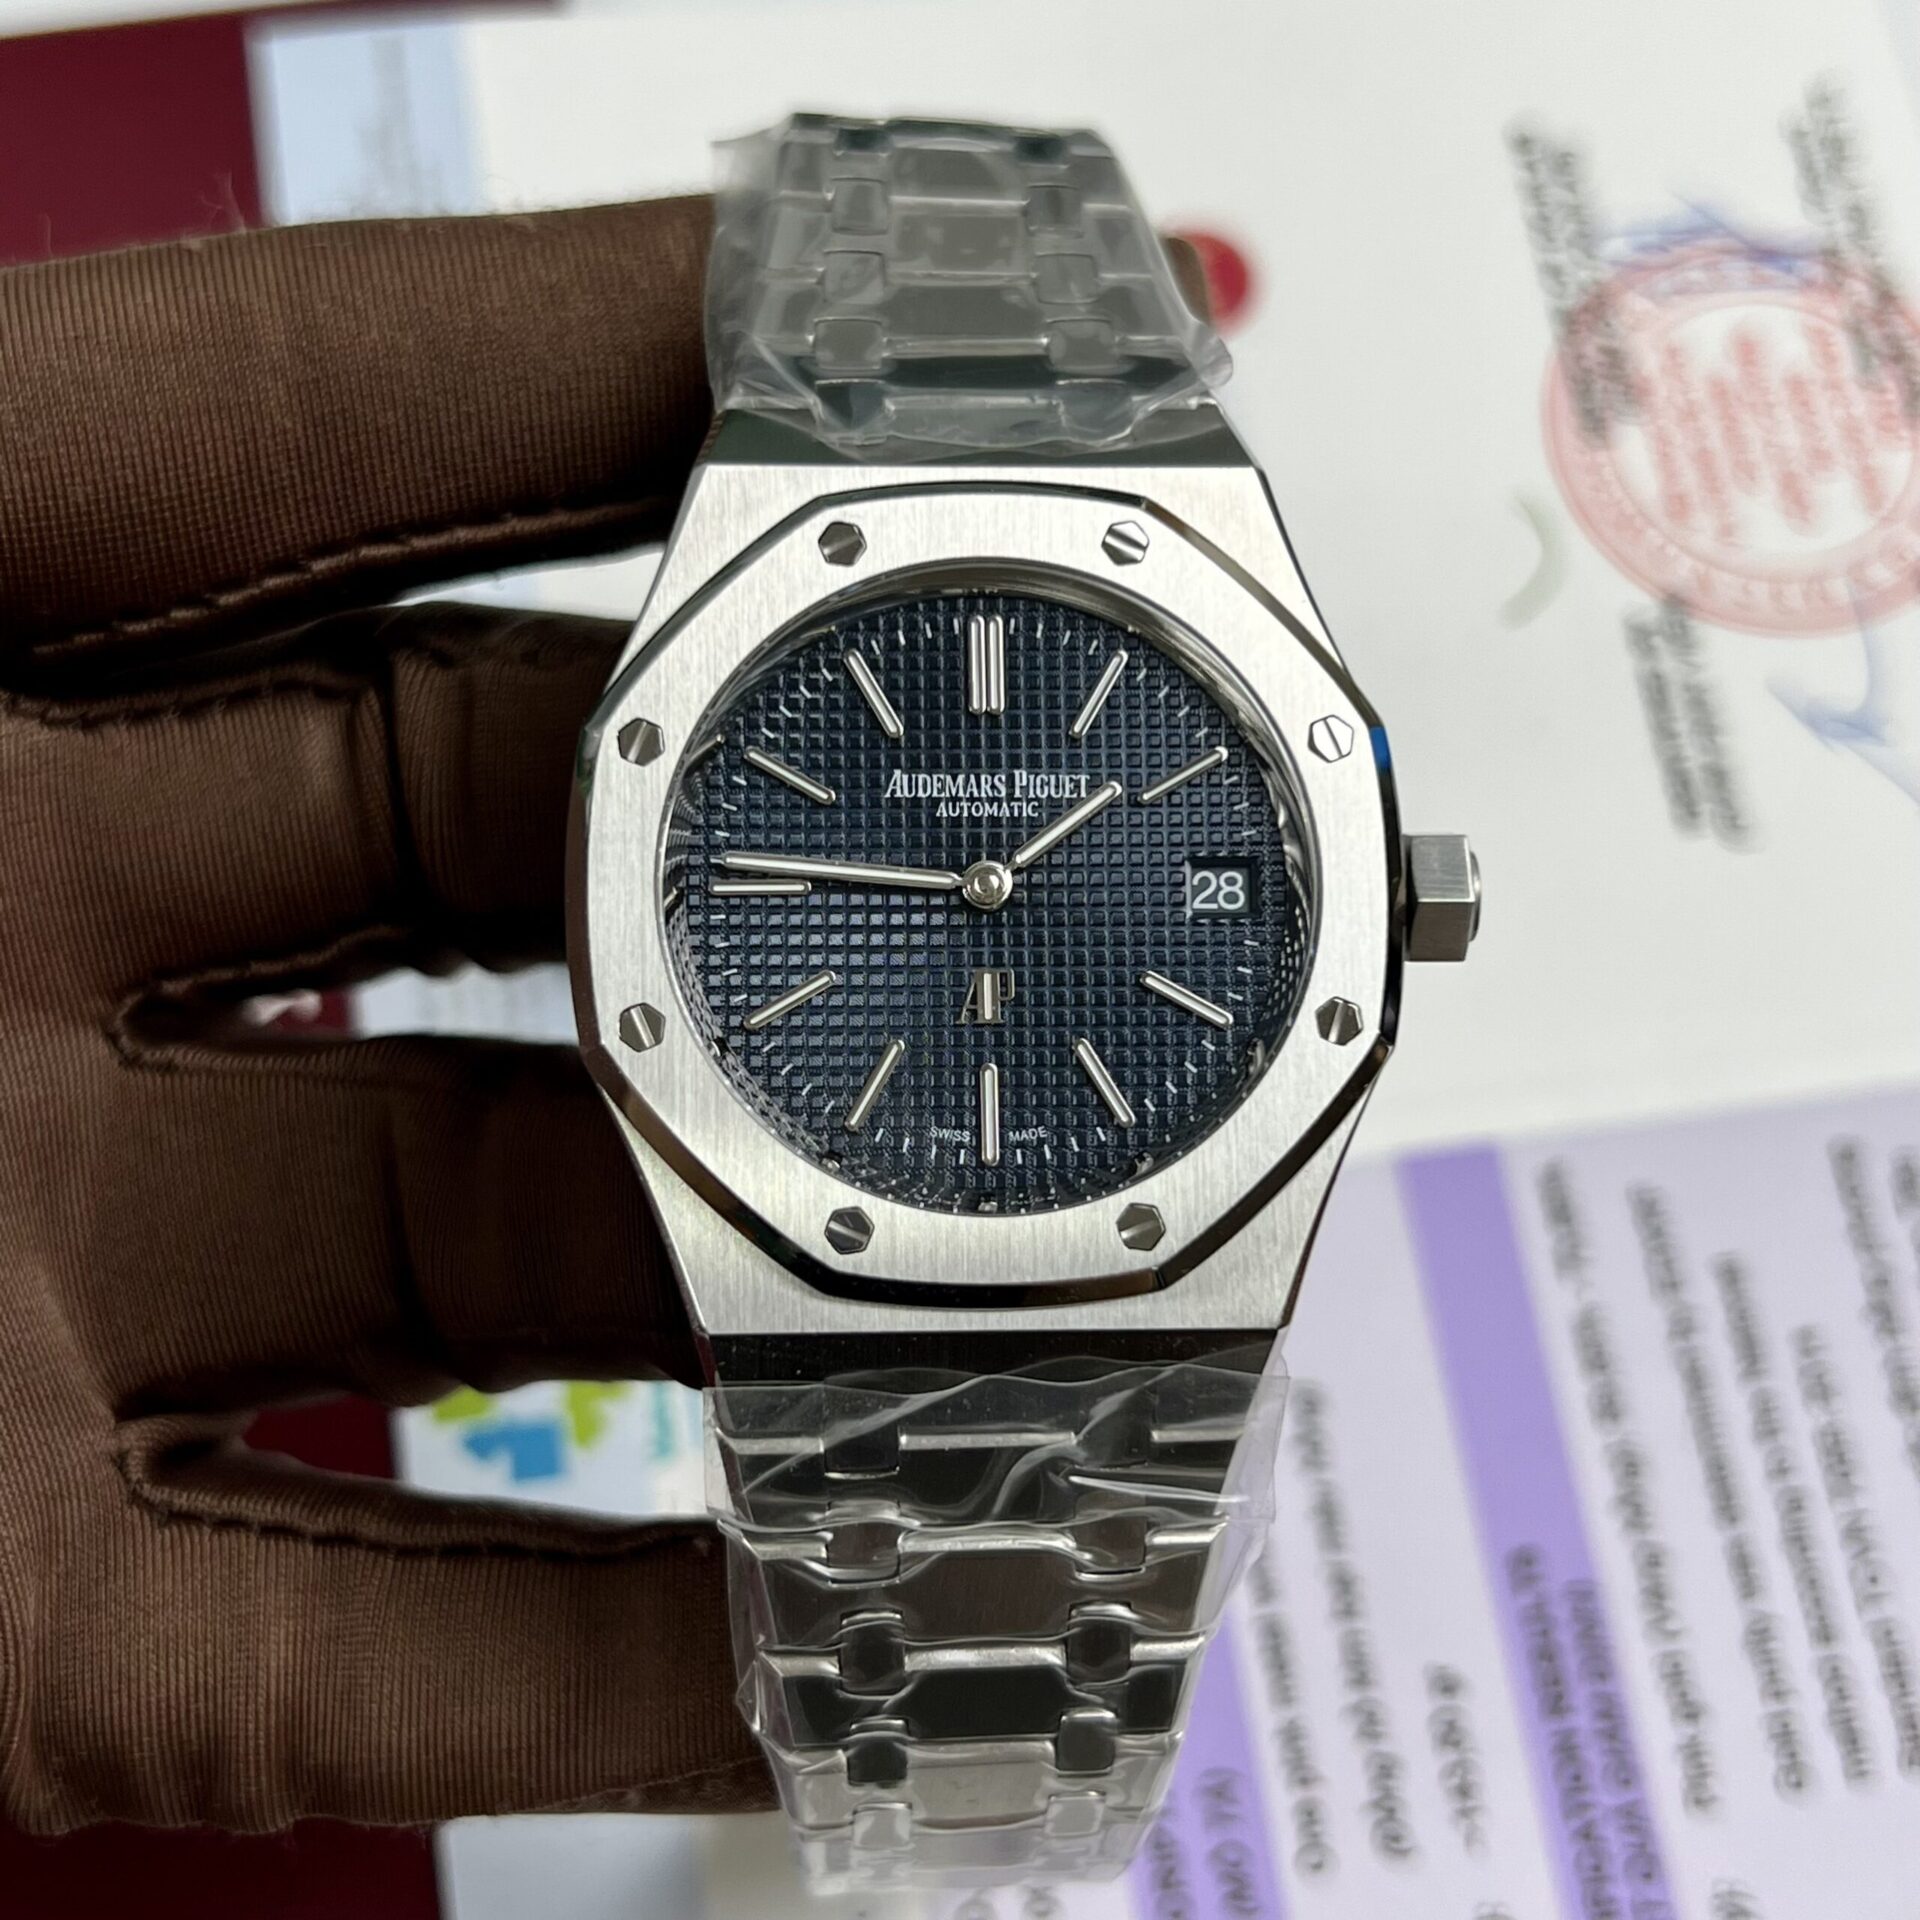 Phụ kiện, dây đồng hồ Audemars Piguet chính hãng - Boss Luxury